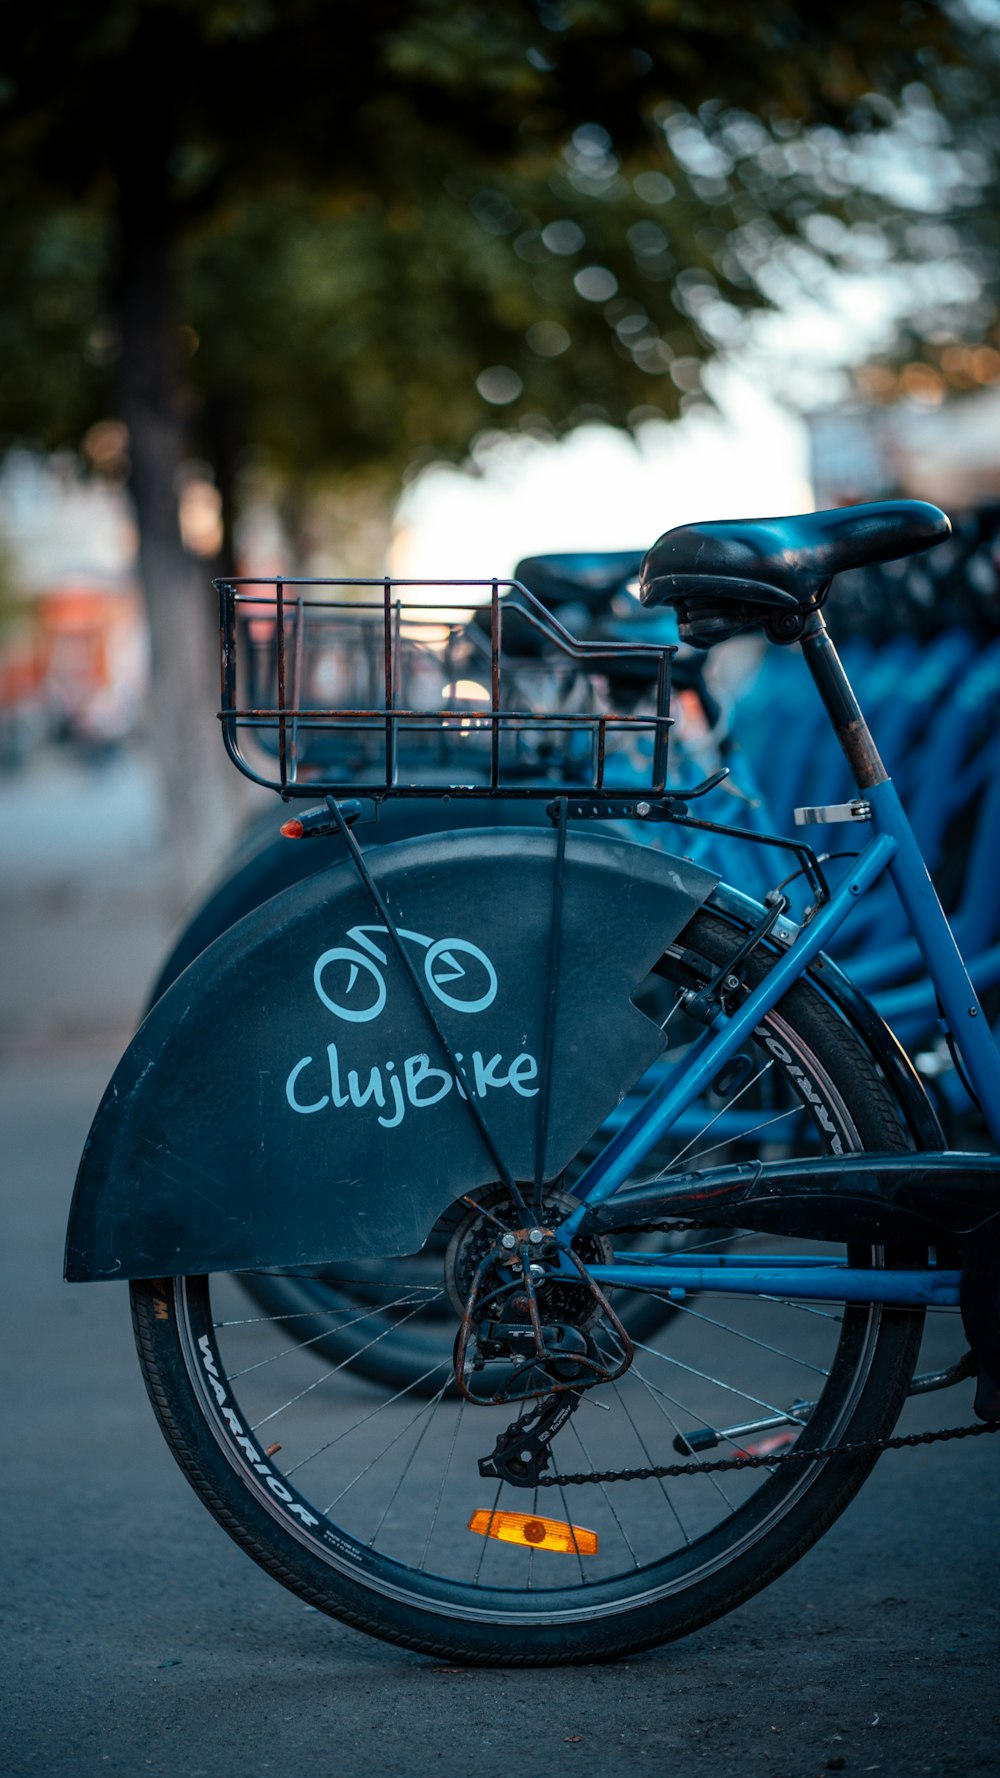 파란색과 검은 색 ClujBike 자전거